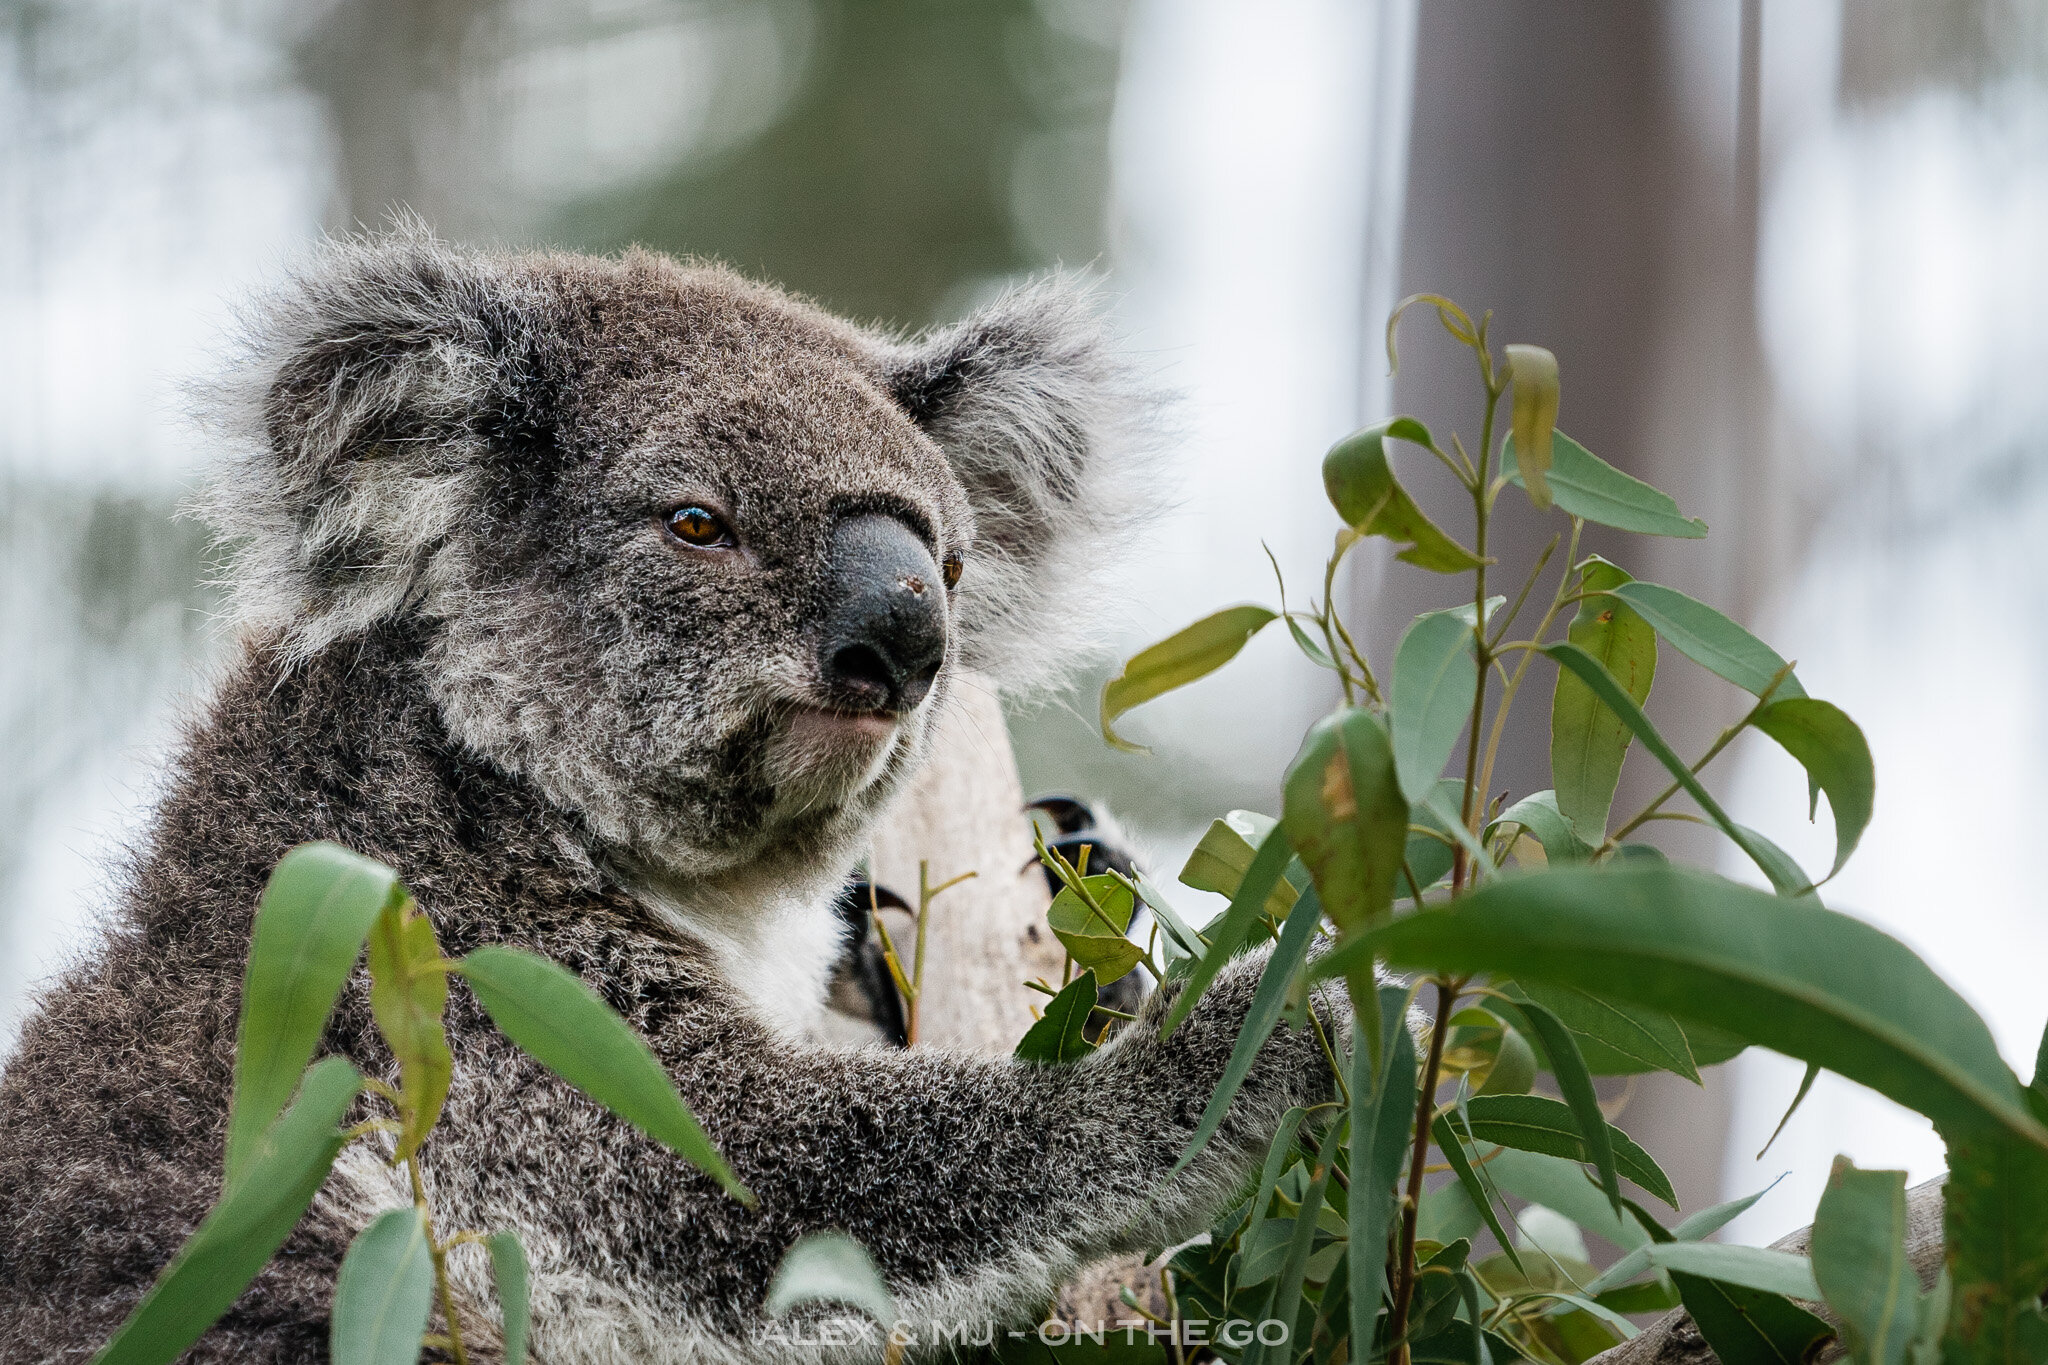 Comment S Appelle La Femelle Du Koala Port Macquarie : rencontre avec les patients du Koala Hospital